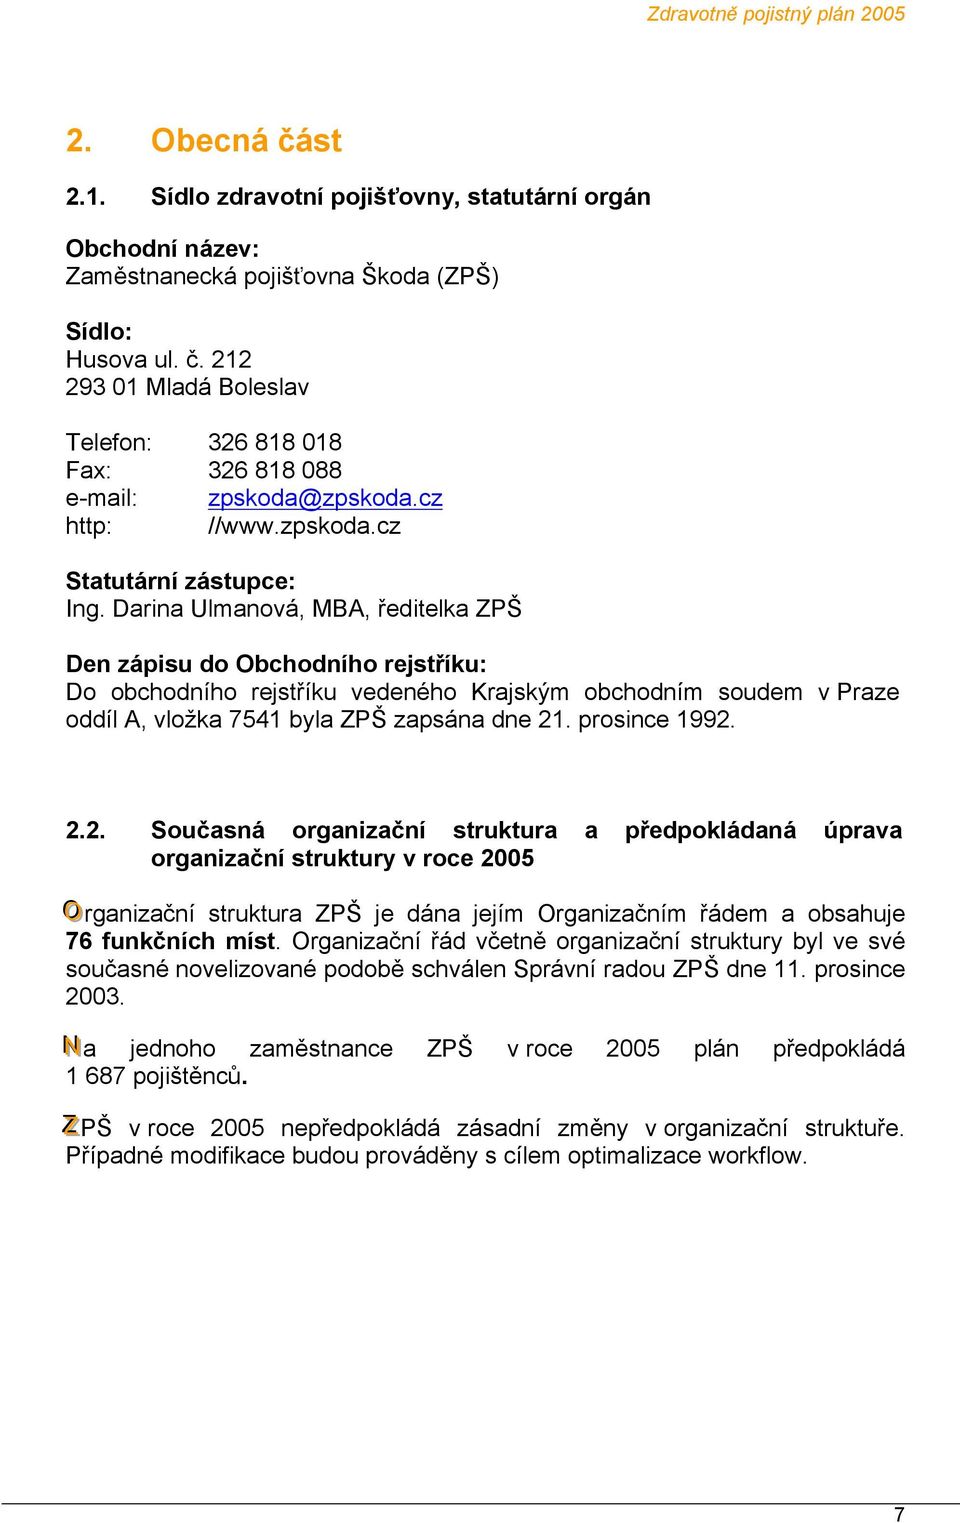 Darina Ulmanová, MBA, ředitelka ZPŠ Den zápisu do Obchodního rejstříku: Do obchodního rejstříku vedeného Krajským obchodním soudem v Praze oddíl A, vložka 7541 byla ZPŠ zapsána dne 21. prosince 1992.